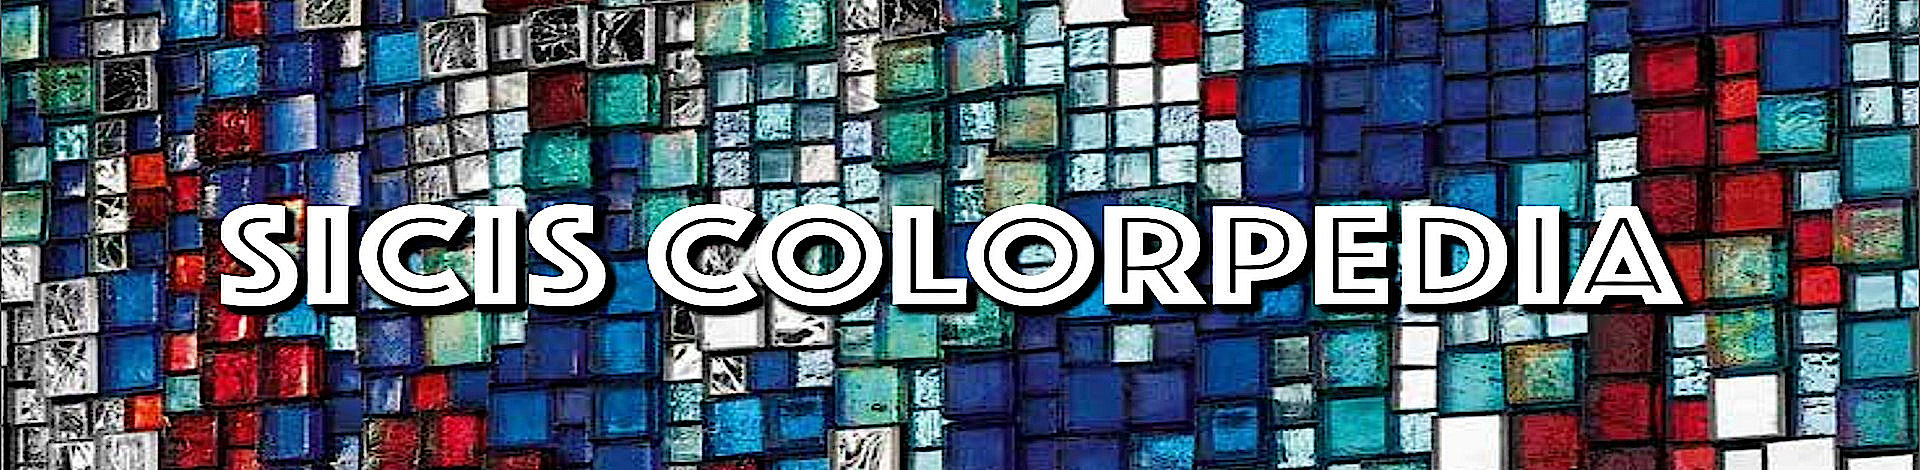 SICIS mozaik a Colorpedia katalóguson keresztül